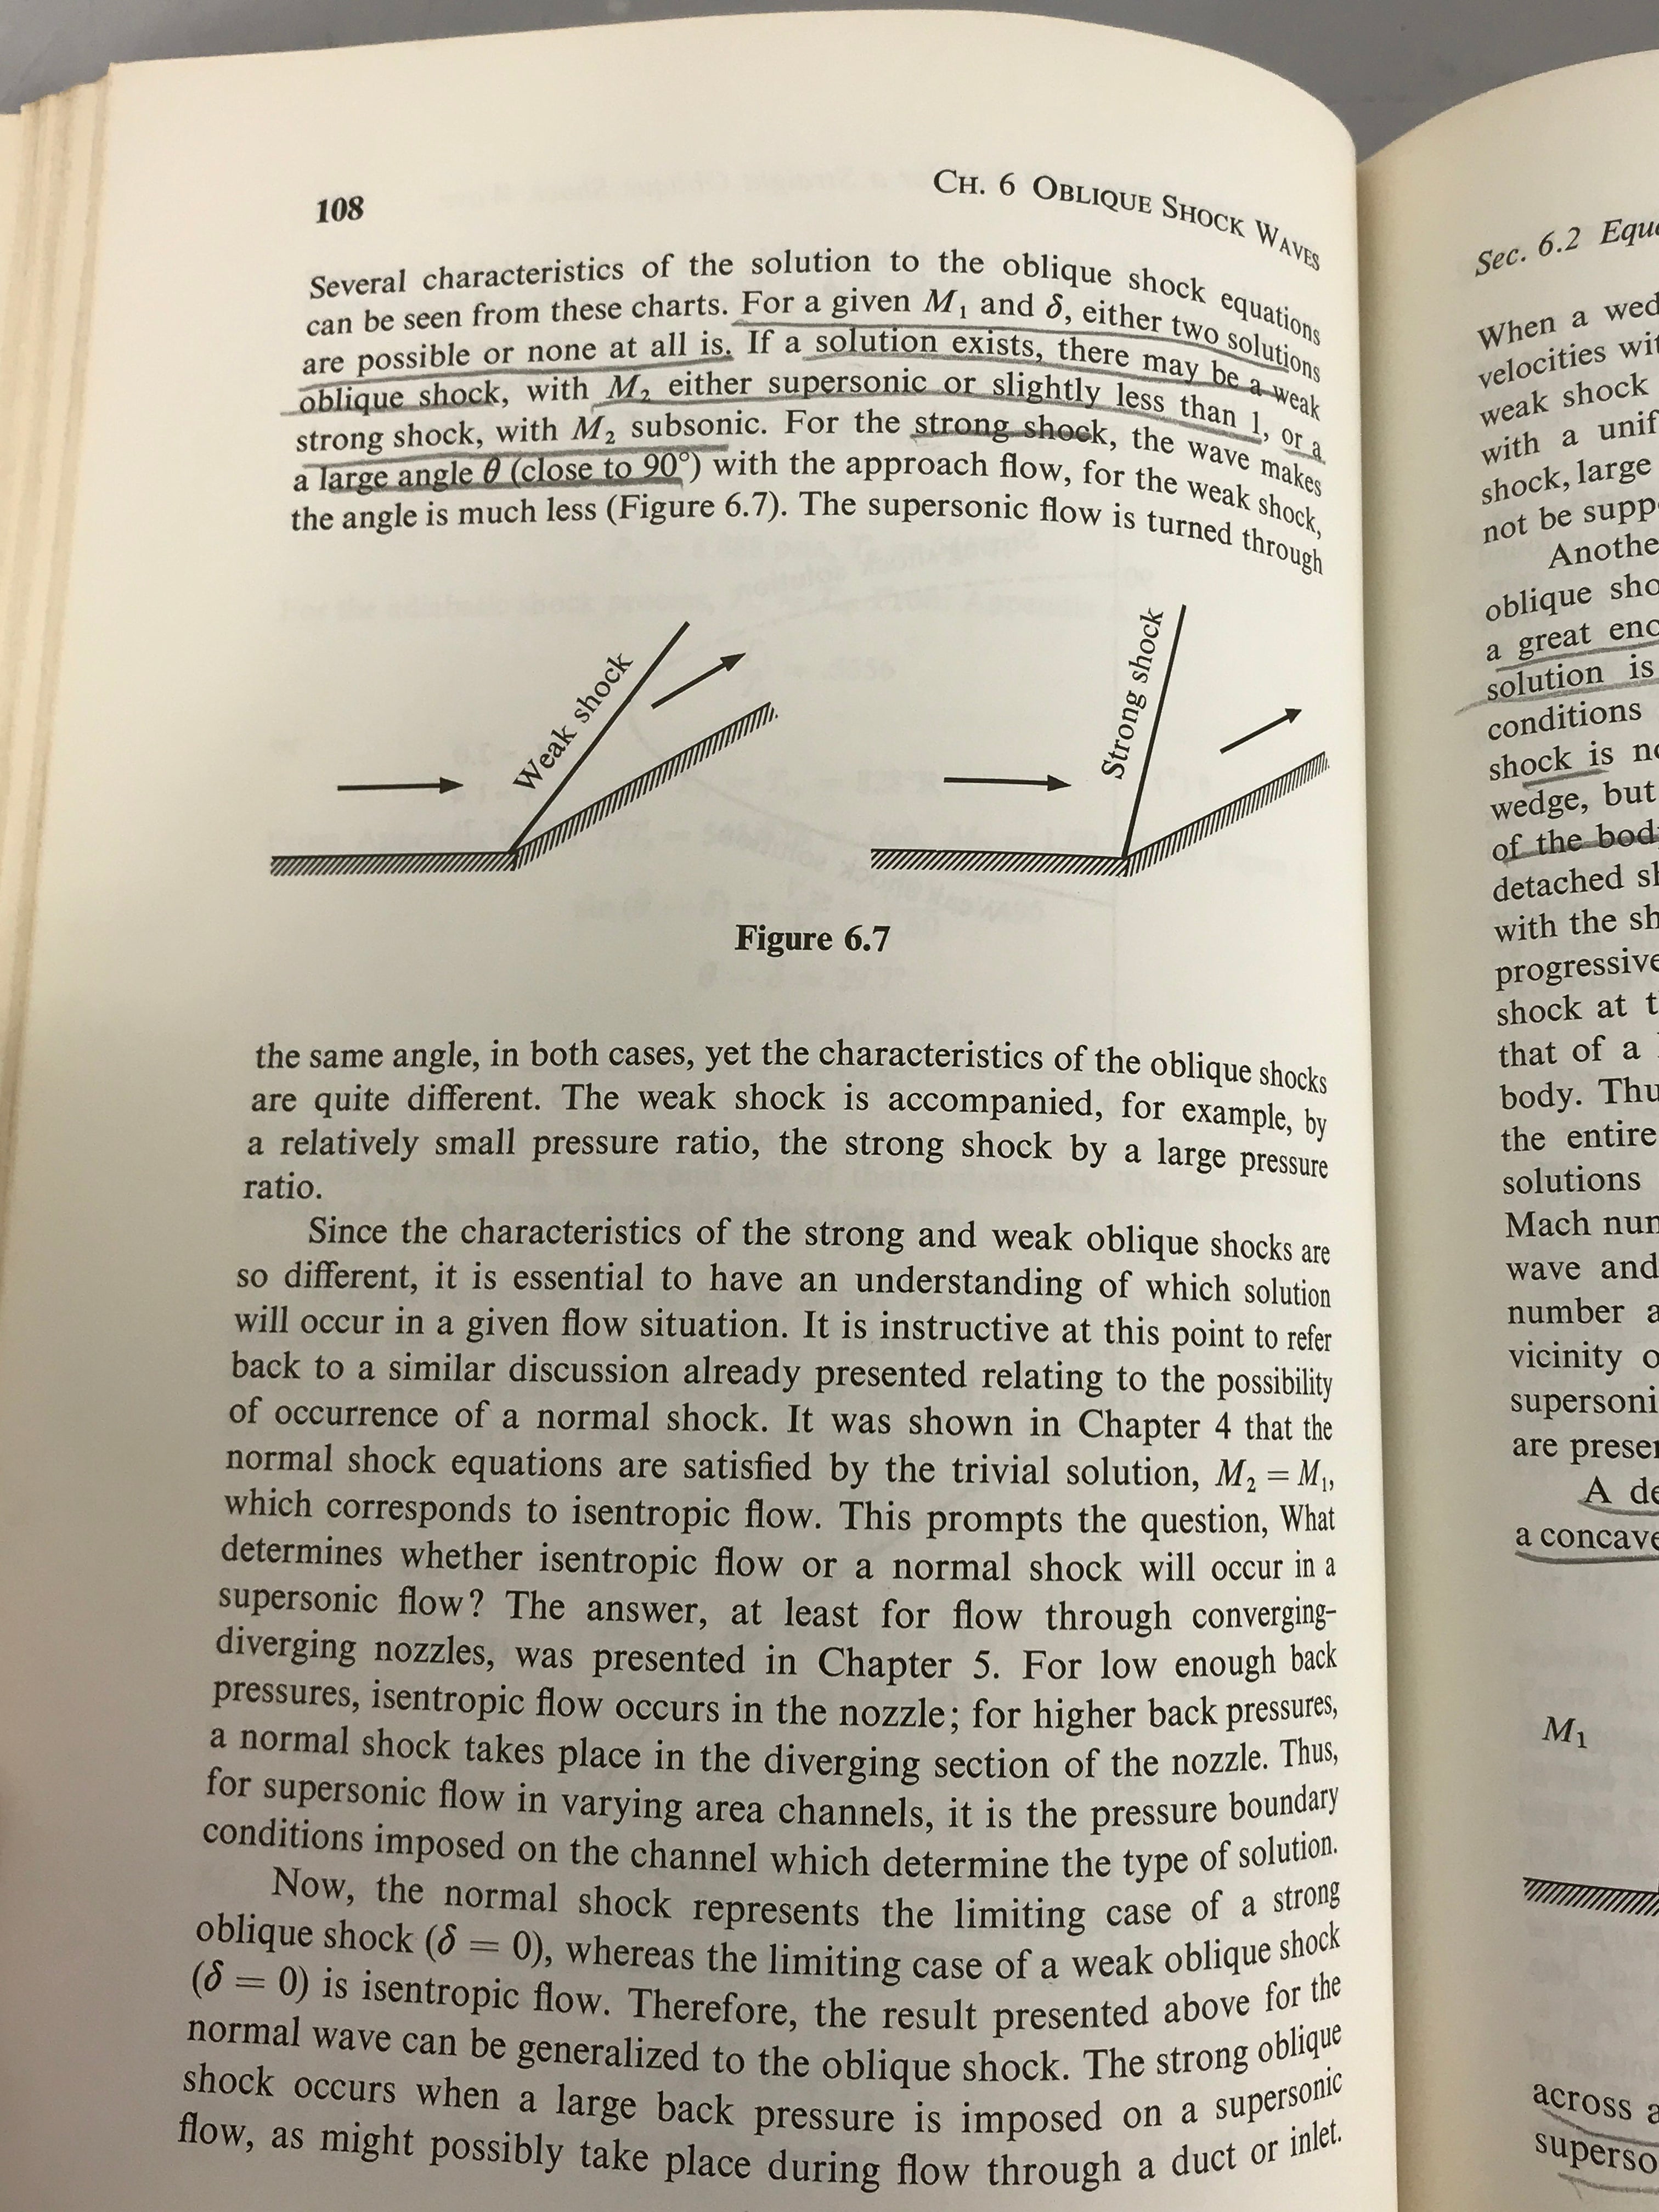 Gas Dynamics by James E.A. John 1972 Third Printing HC